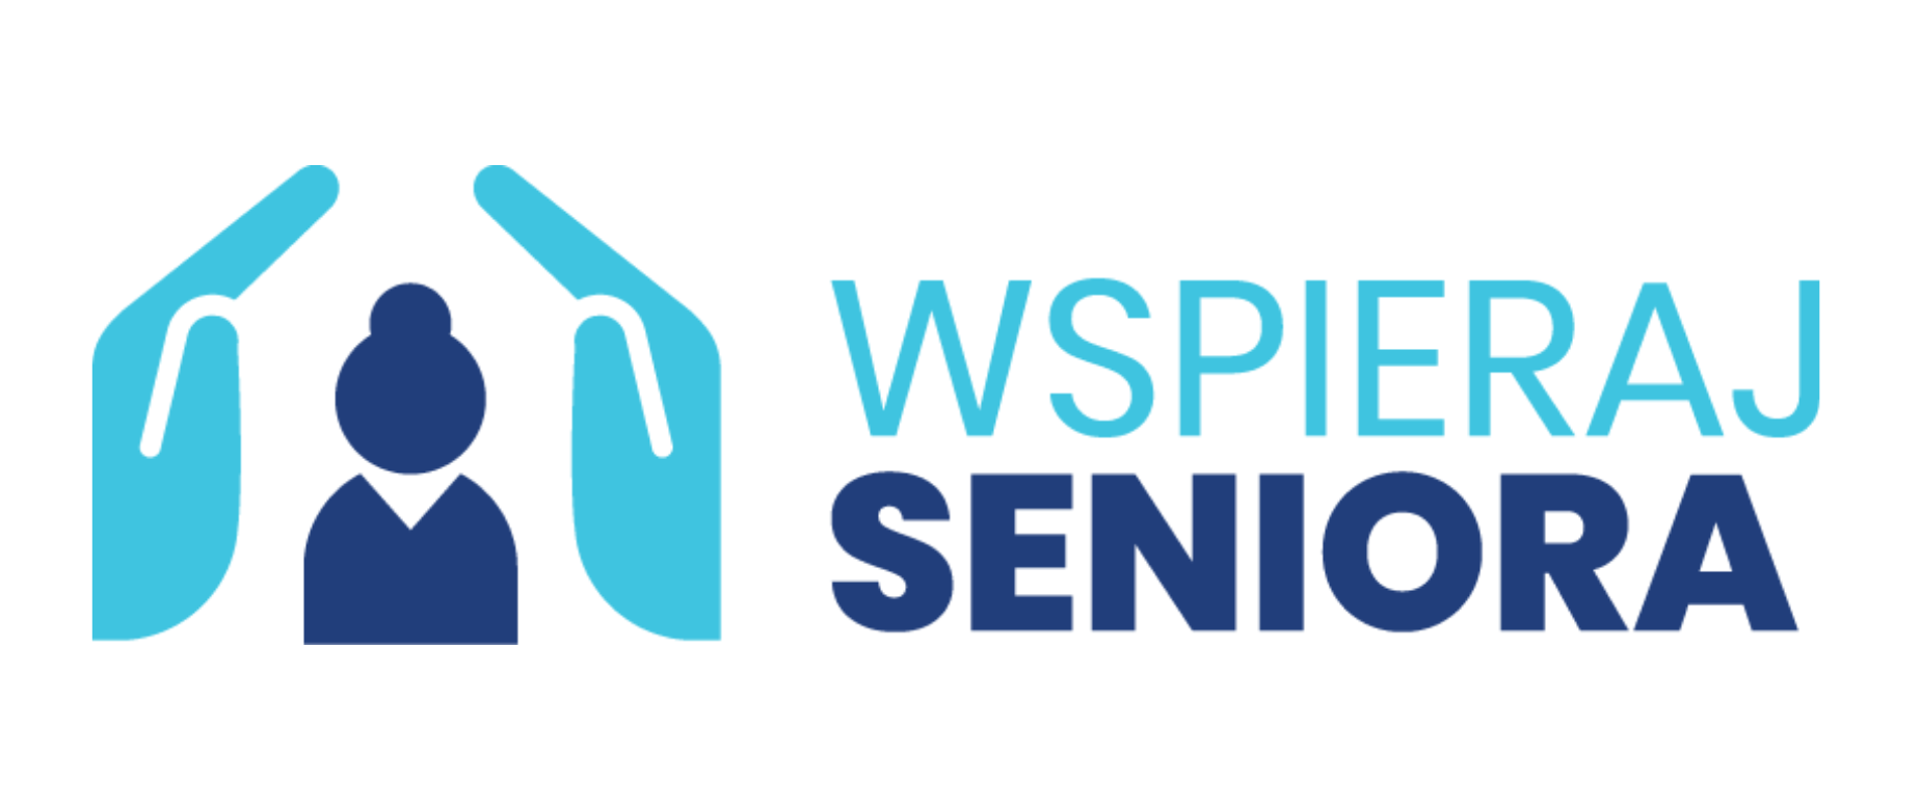 Logotyp akcji wspieraj seniora